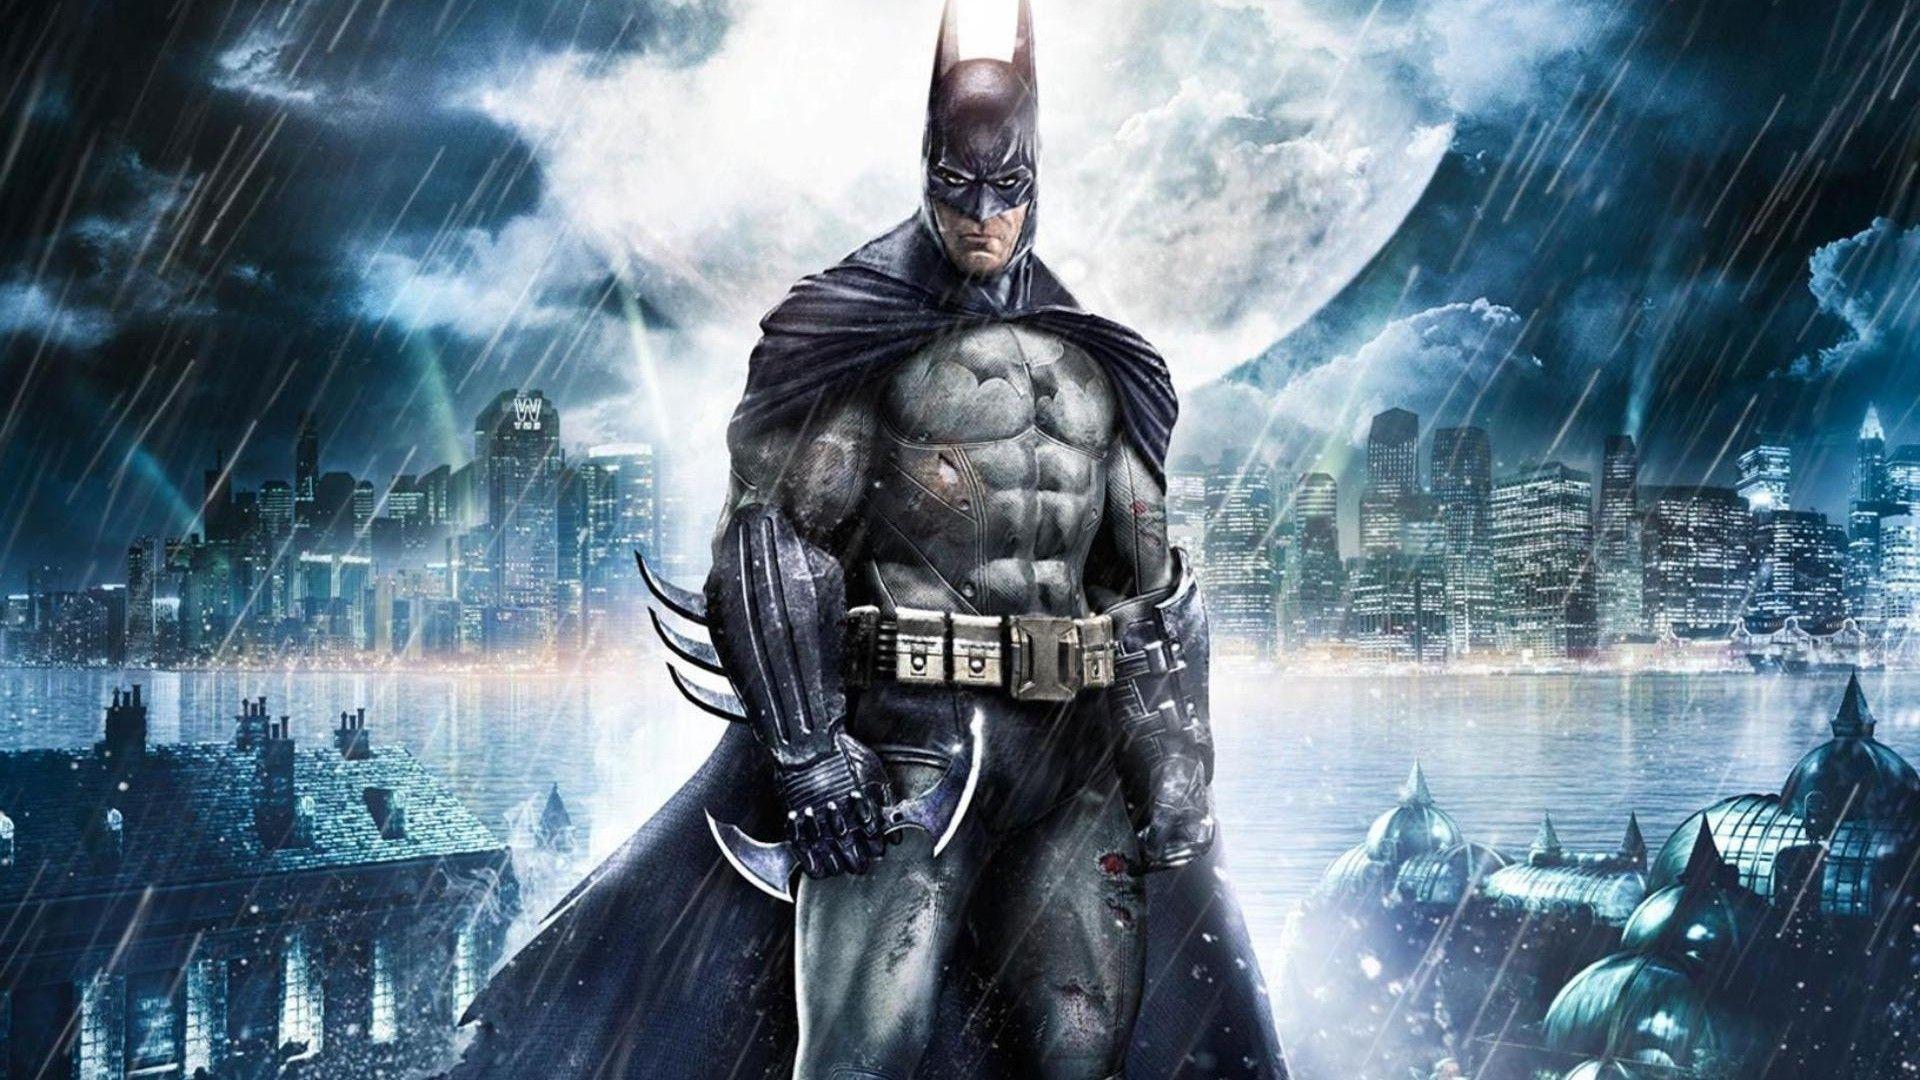 Batman Arkham Asylum HD desktop wallpaper, Widescreen, High